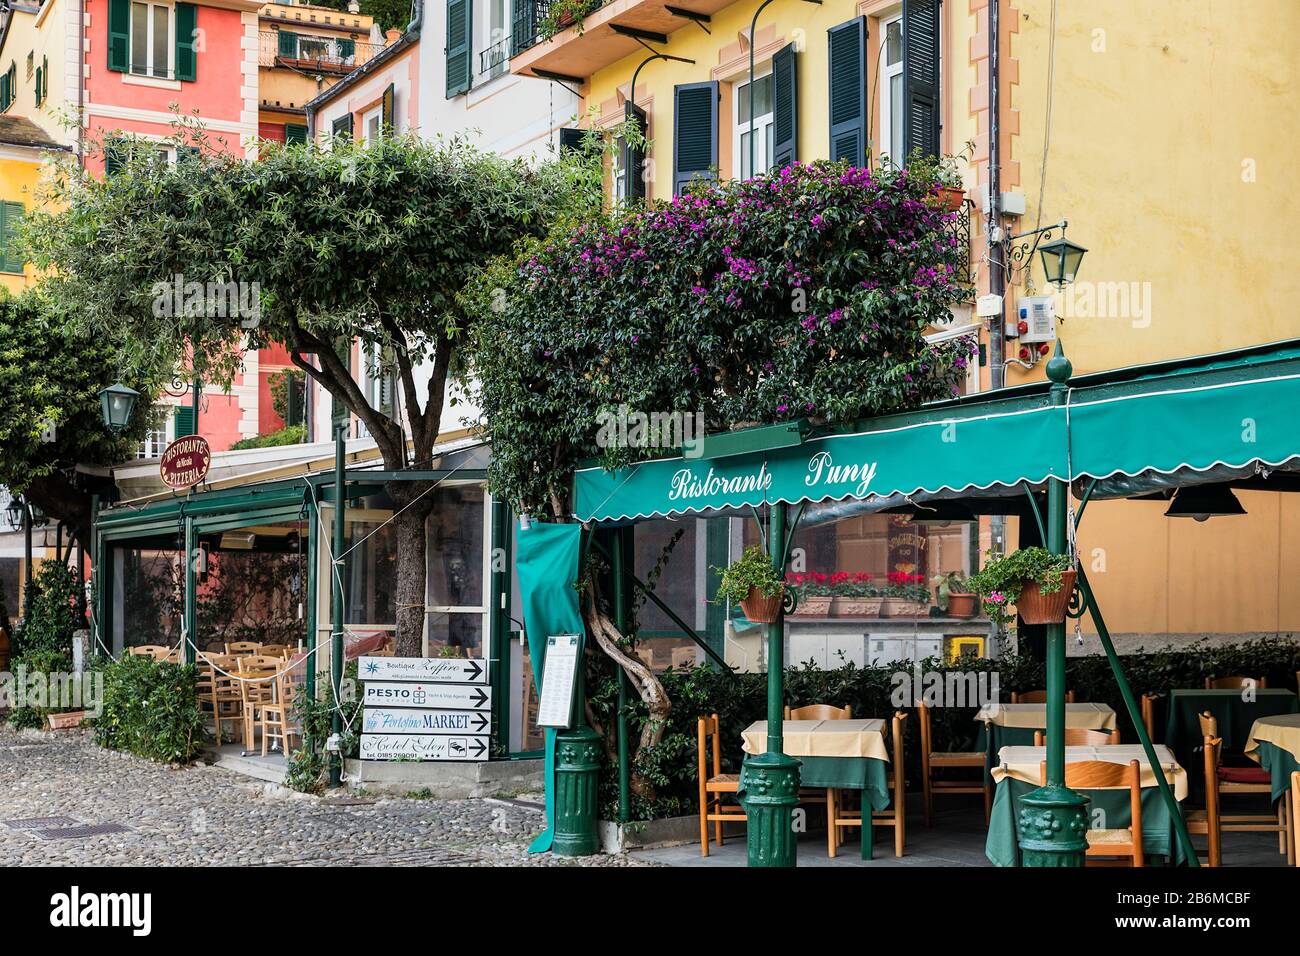 Restorante Puny in the charming town of Portofino. Stock Photo